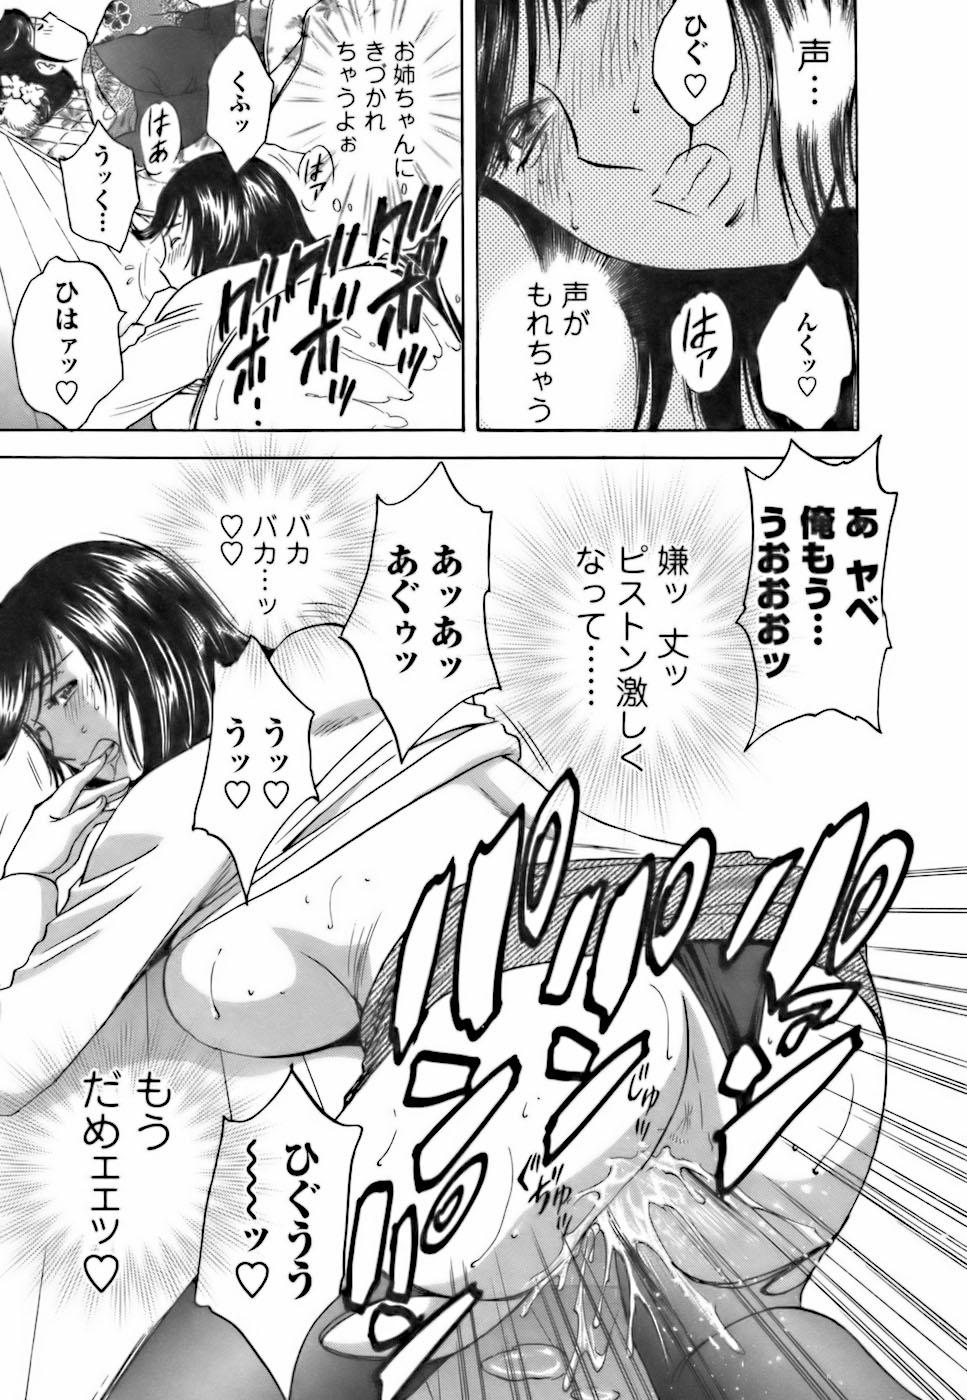 [Hidemaru] Mo-Retsu! Boin Sensei (Boing Boing Teacher) Vol.3 158